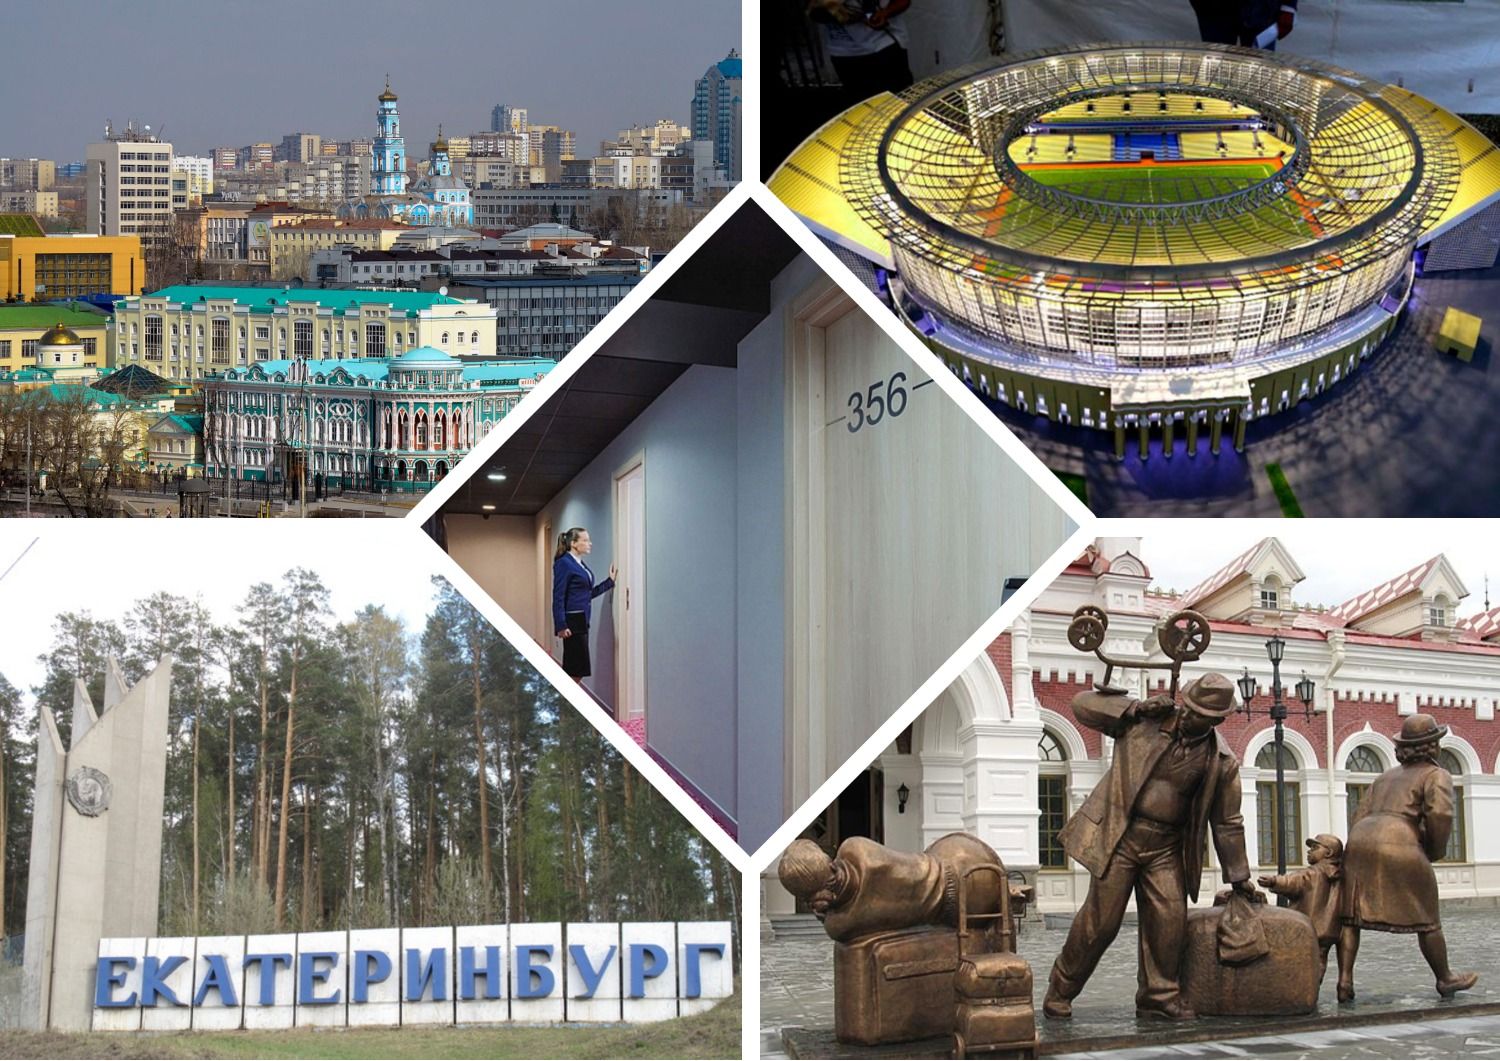 Най-добрите евтини хотели, хотели, хостели в Екатеринбург през 2020 г.